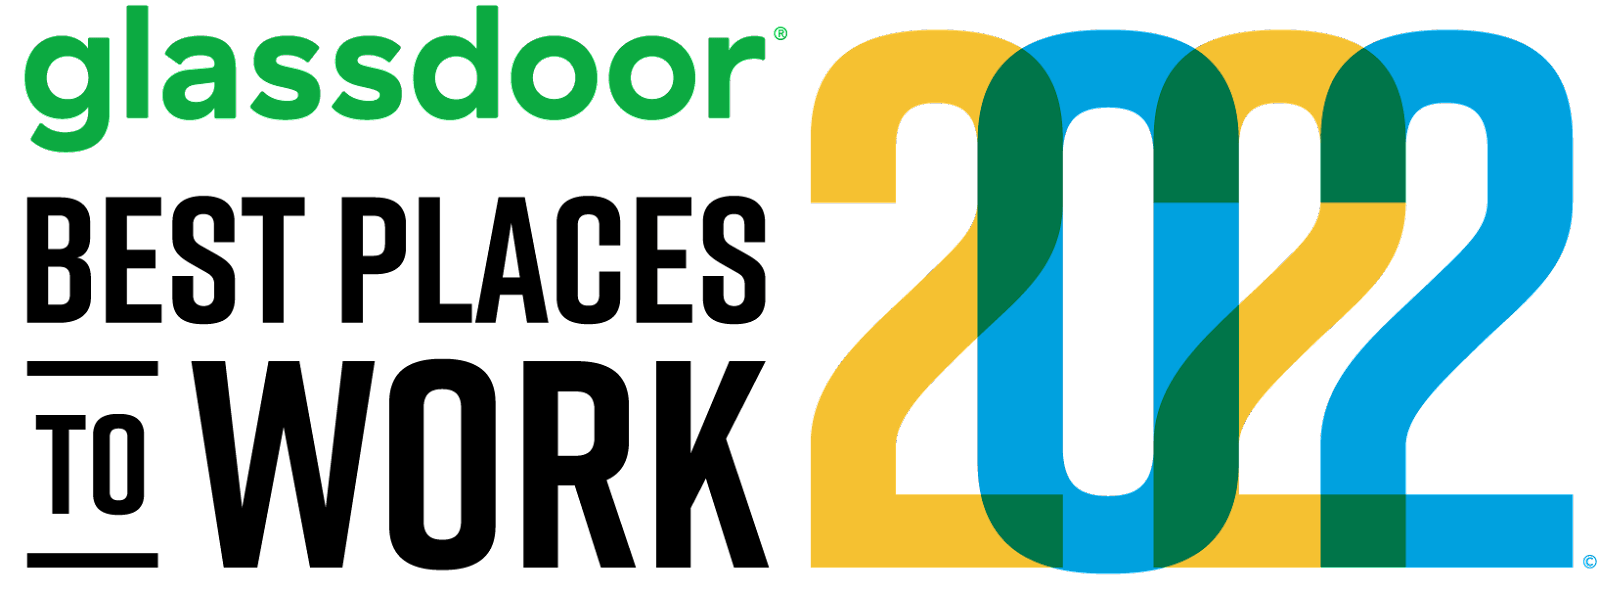 Glassdoor Best Places to Work 2022 logo. 